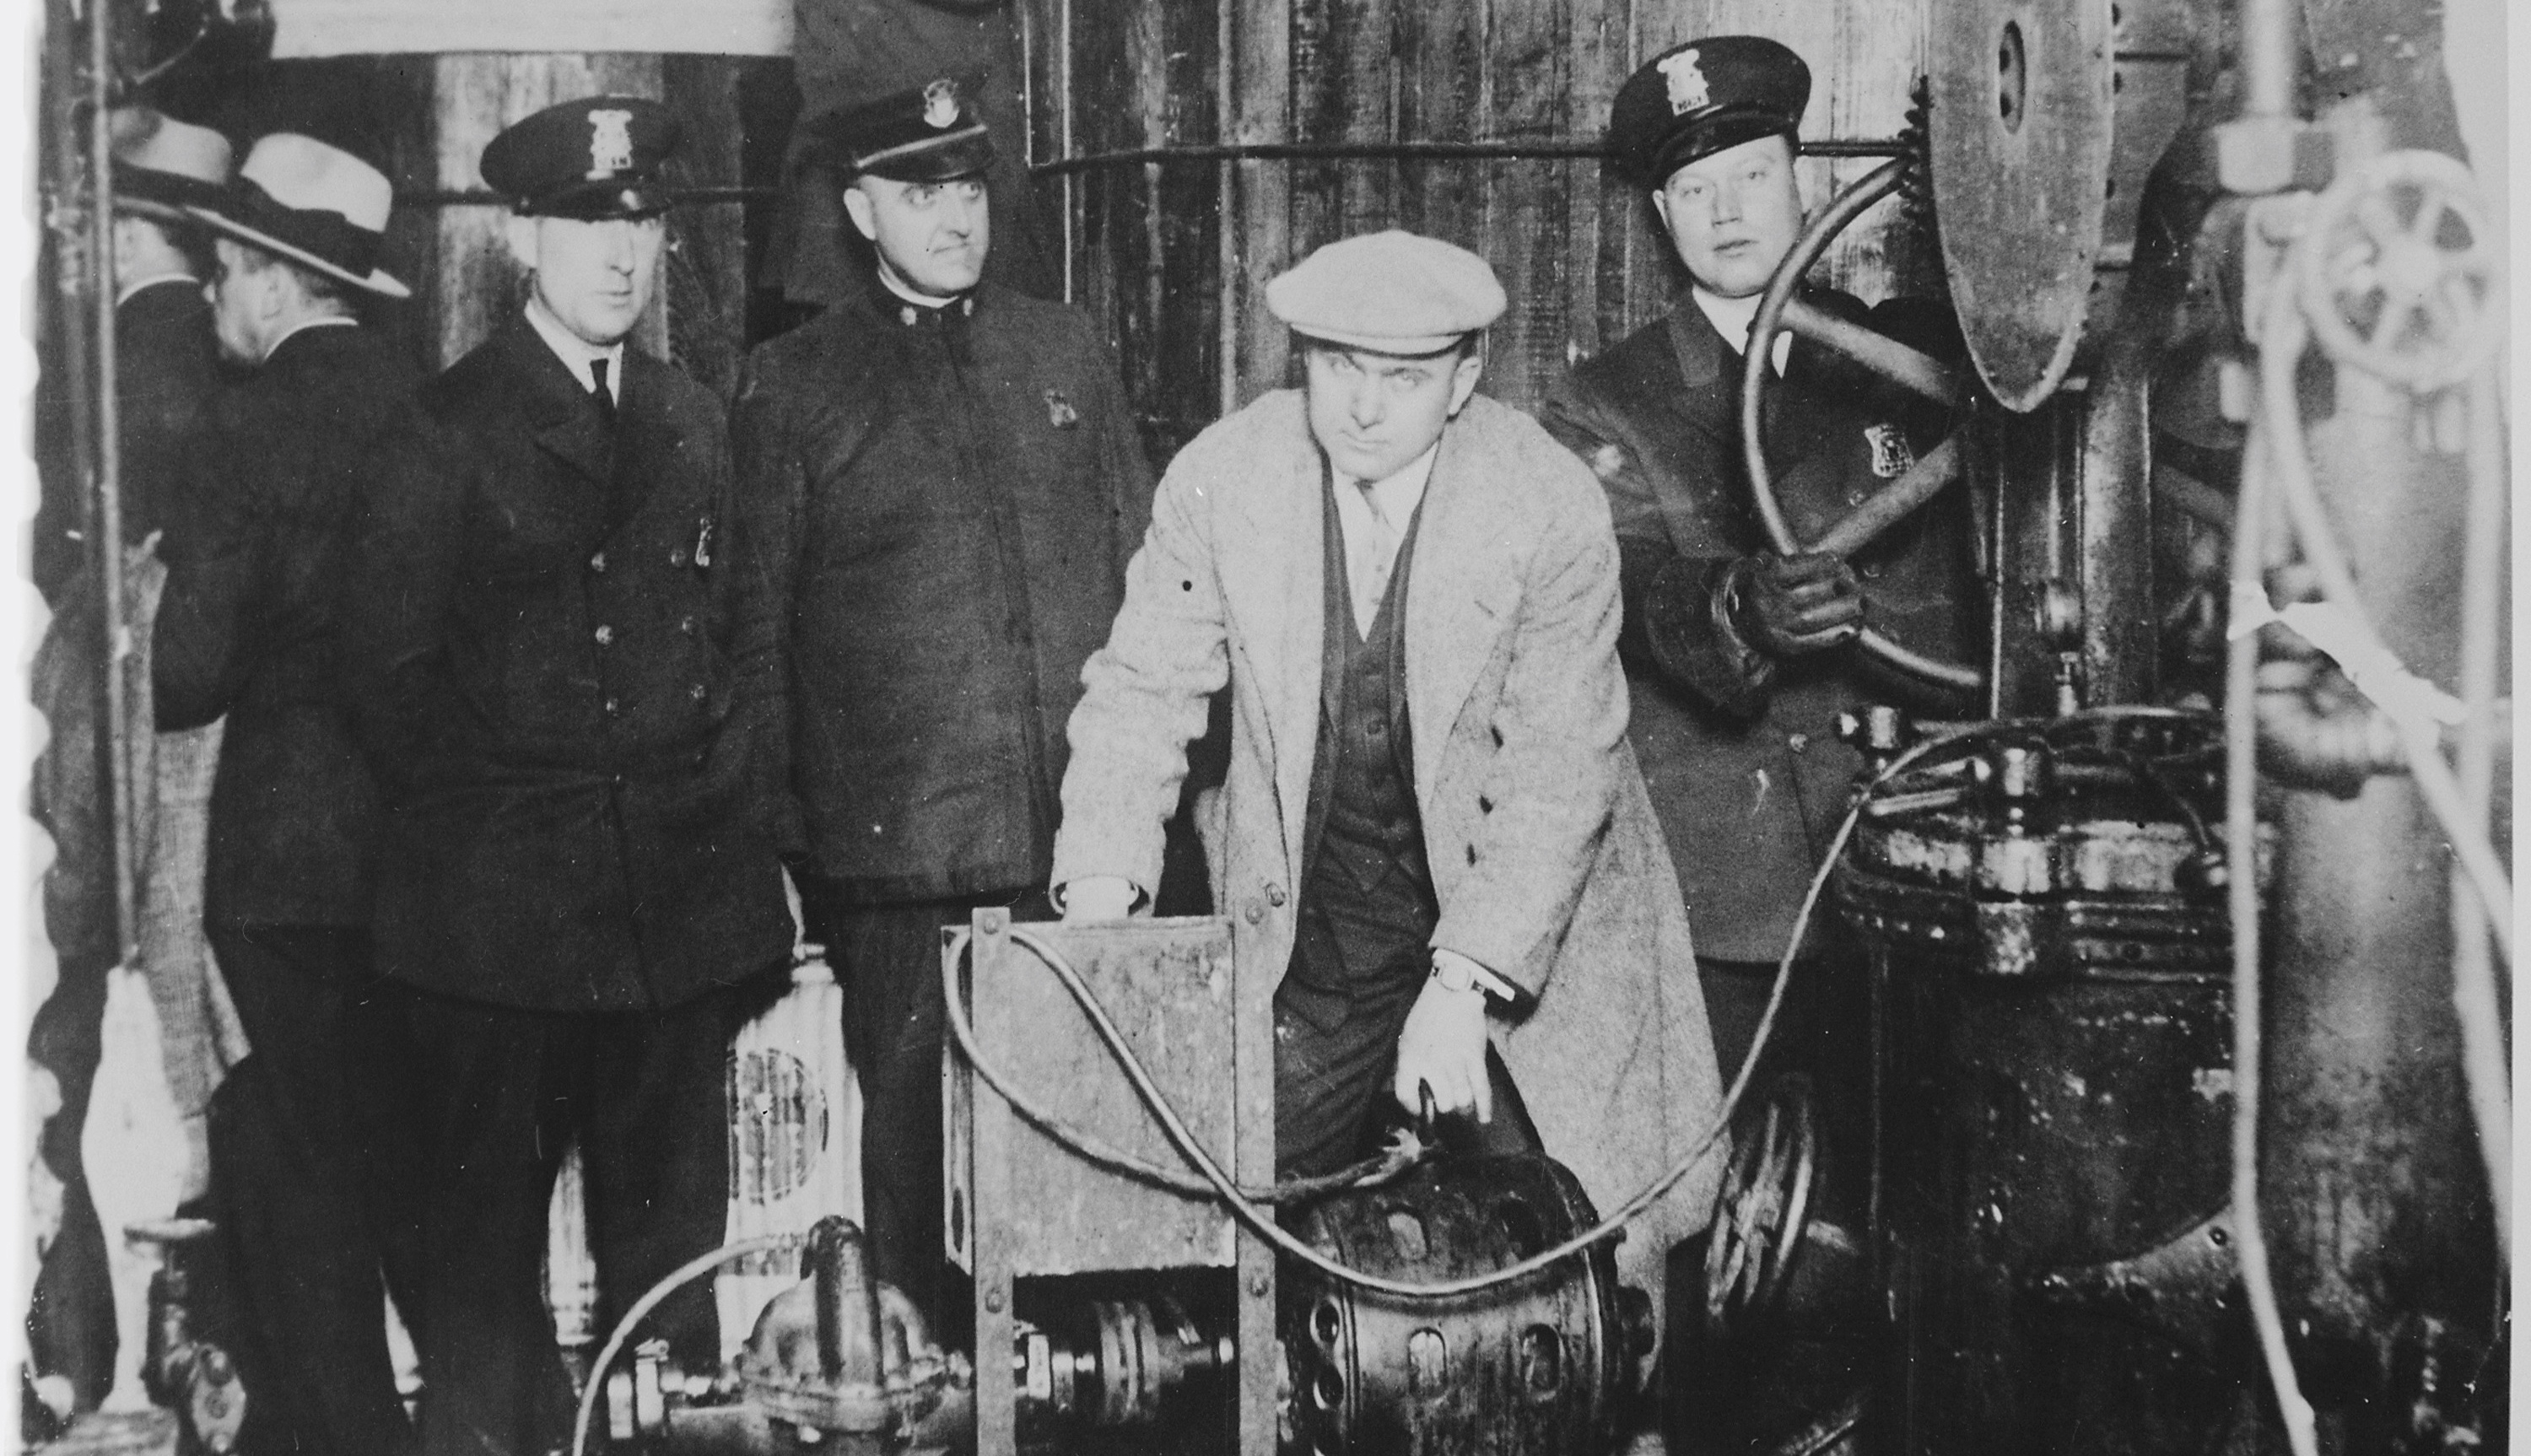 Descente de police pendant la prohibition aux États-Unis. Le marché de contrebande s’est grandement développé à cette période. © Wikimedia Commons, DP